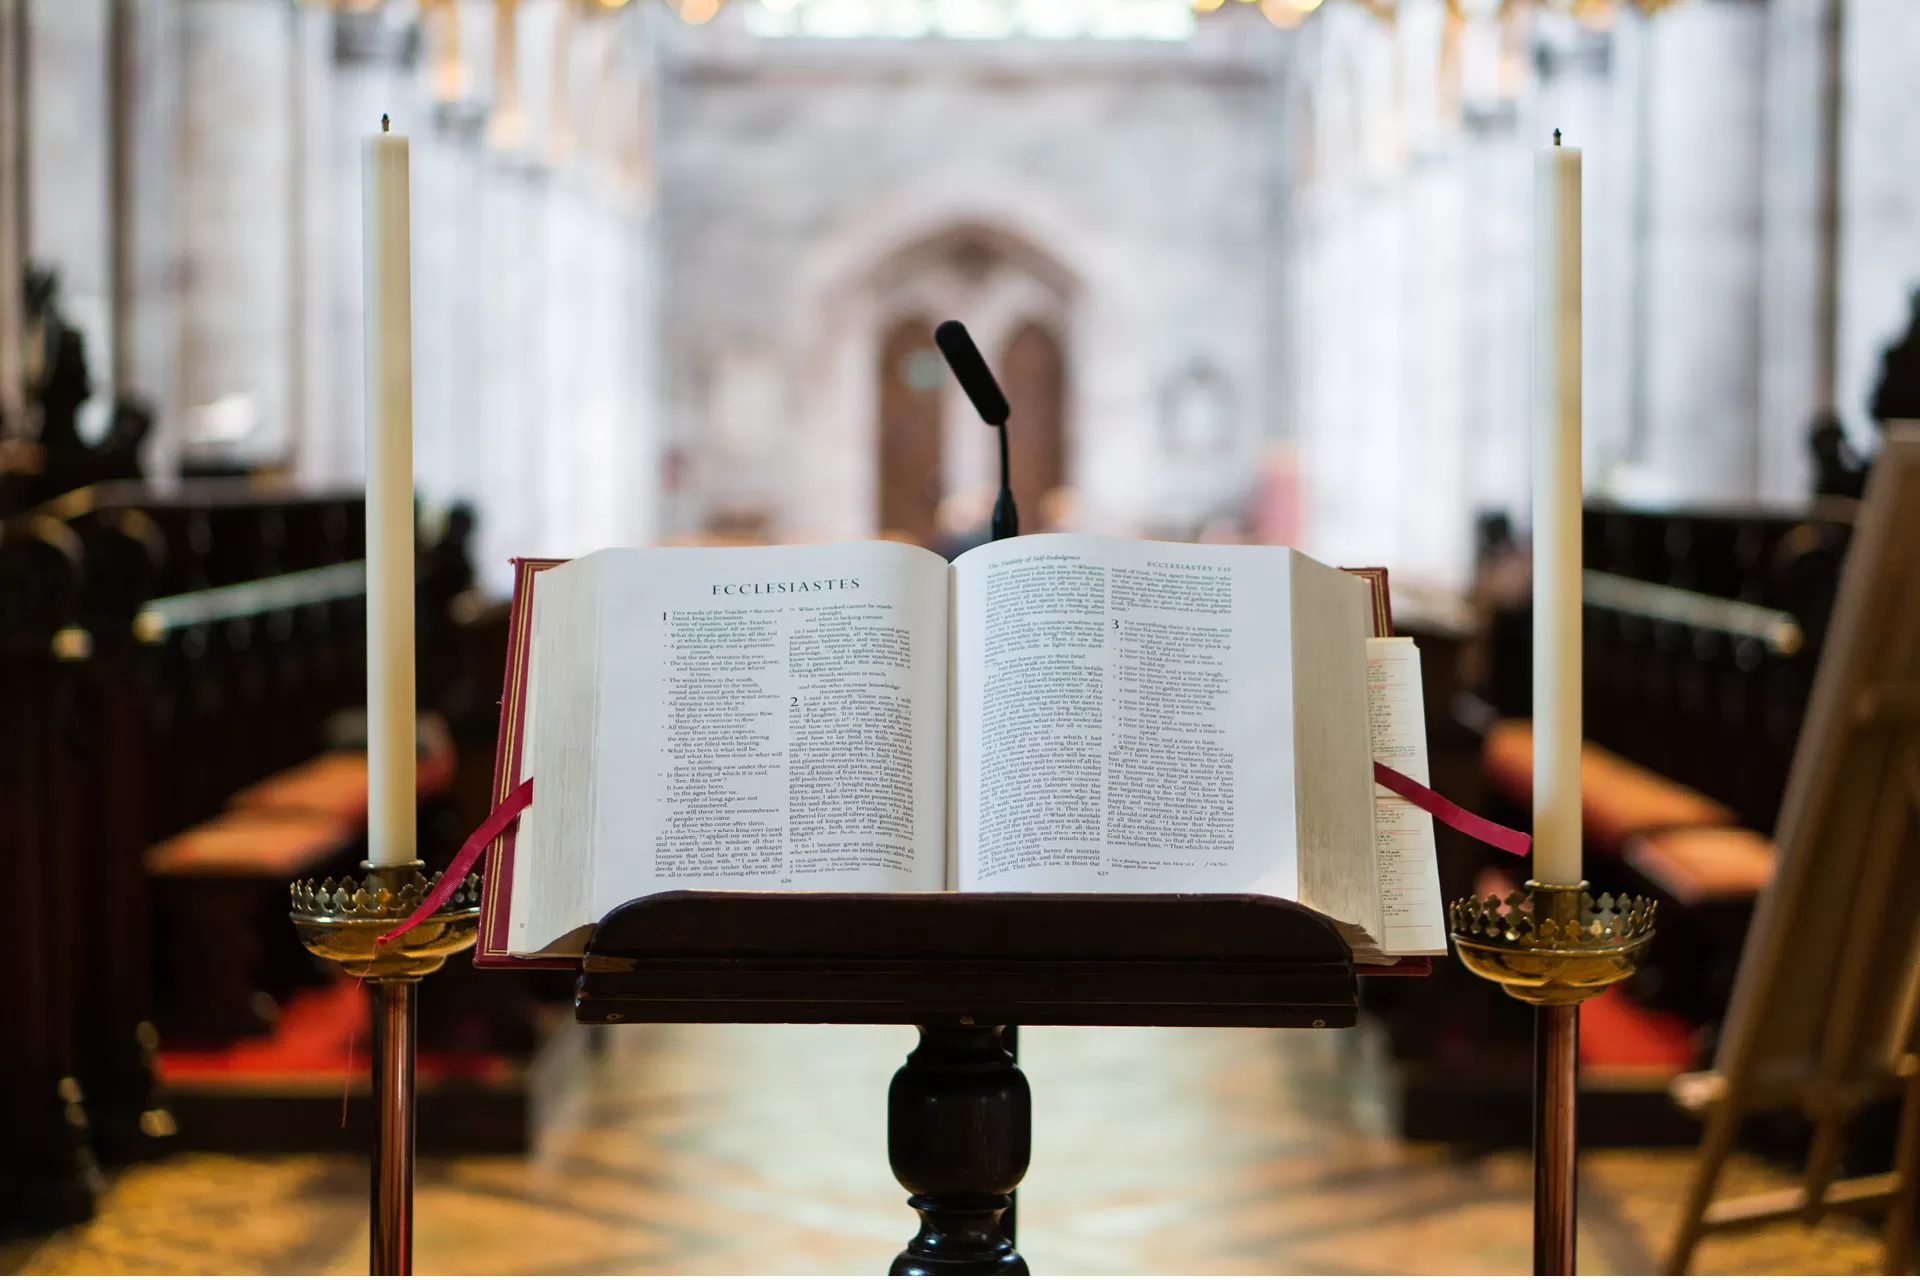 Eine offene Bibel liegt auf einem Buchständer in der Kirche, links und rechts davon ist eine Kerze aufgestellt.